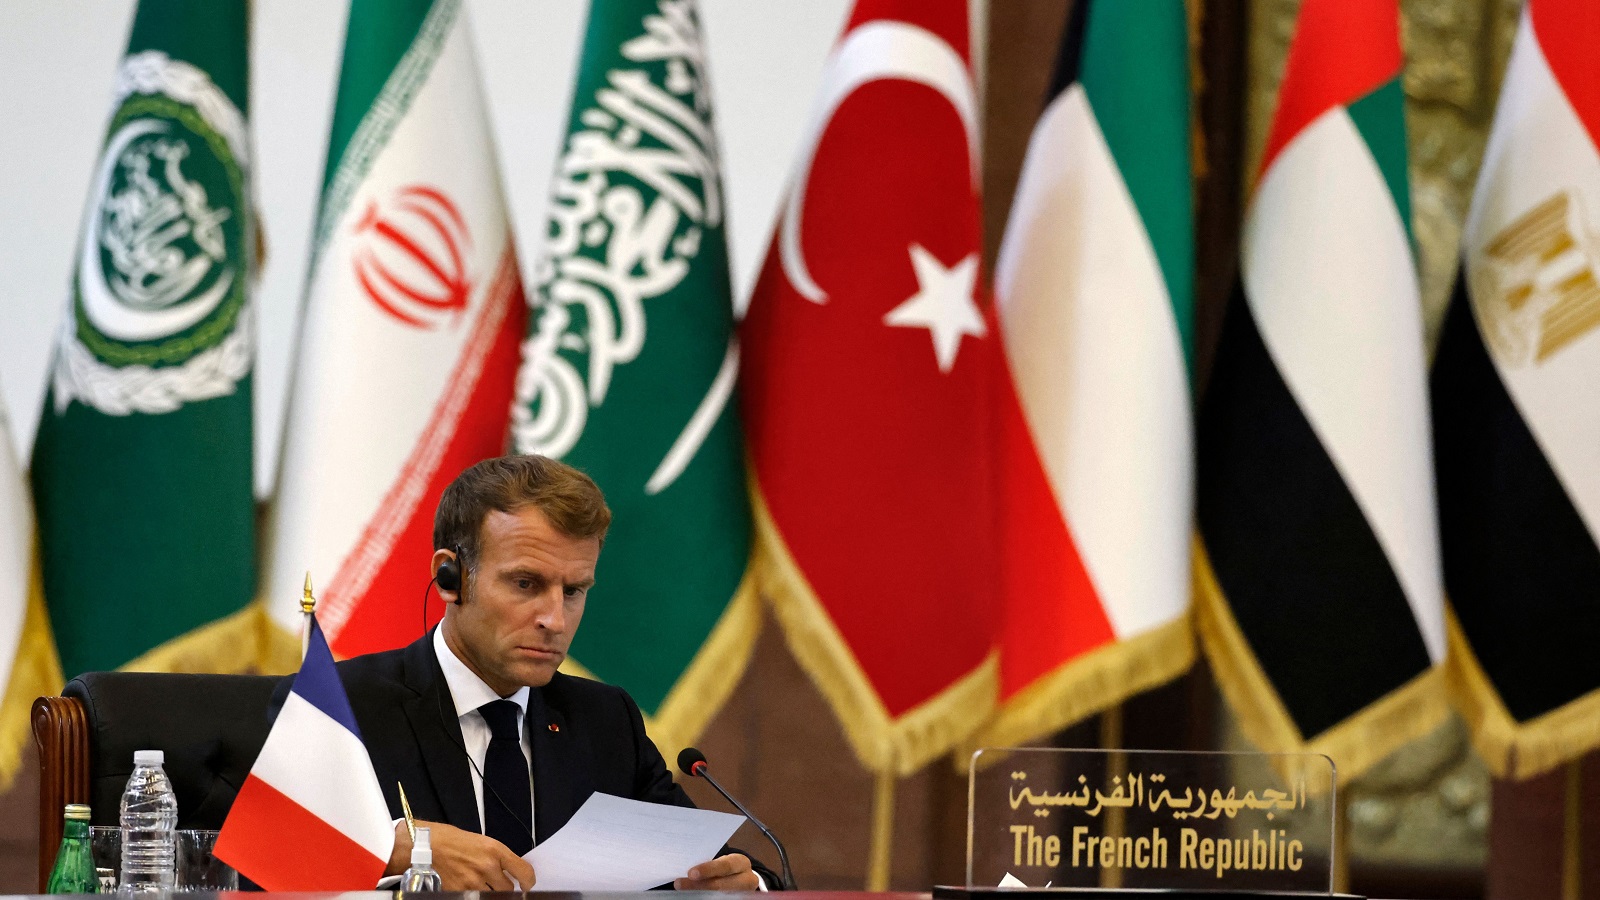 ماكرون وحزب الله على خط بيروت-بغداد: مكاسب إيران وفرنسا